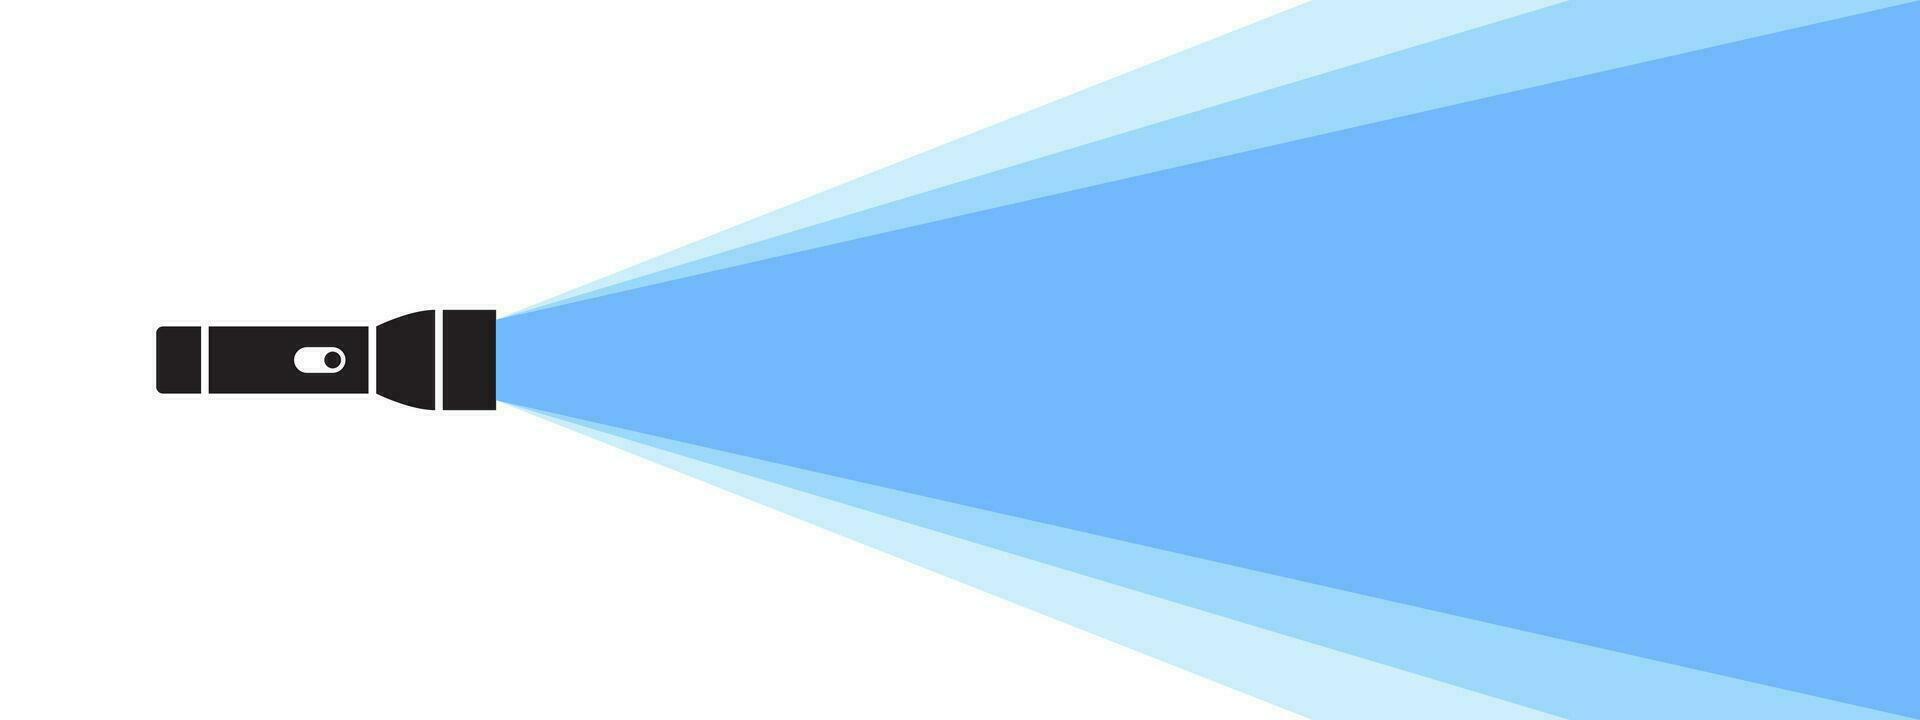 Taschenlampe Illustration. eben Taschenlampe. Banner oder Hintergrund. Vektor skalierbar Grafik